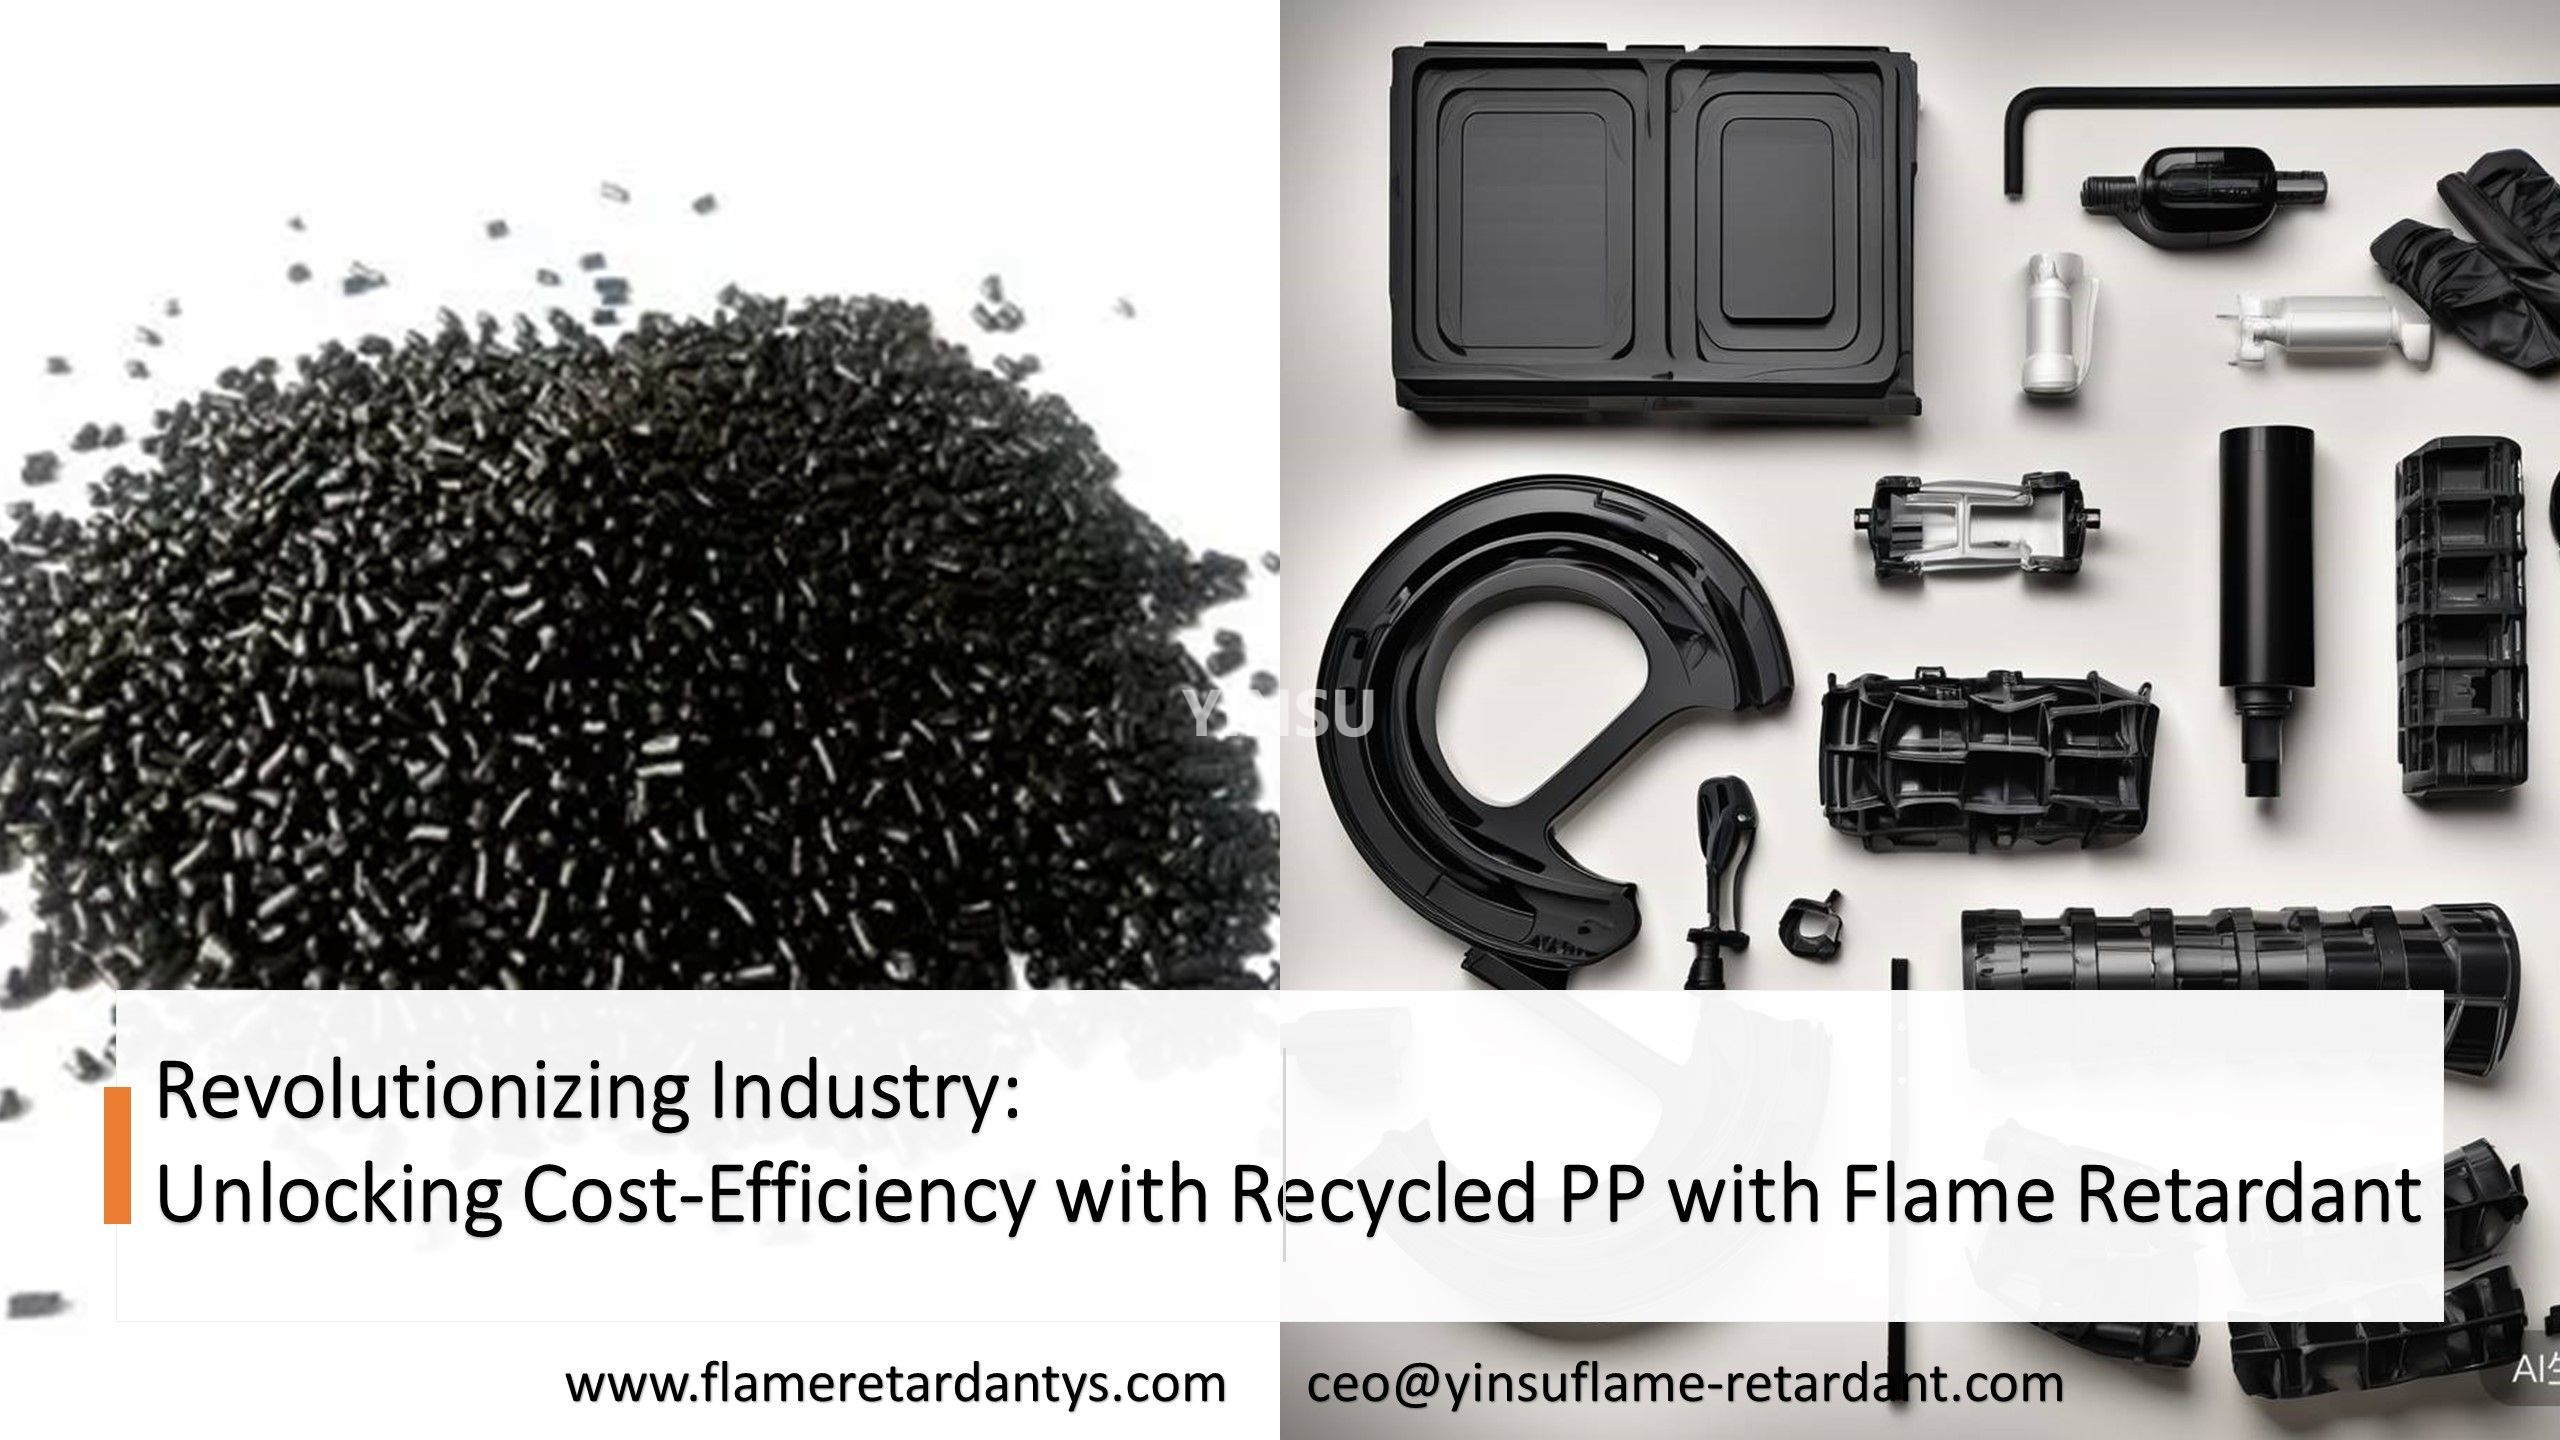 Revolucionando la industria desbloqueando la rentabilidad con PP reciclado y retardantes de llama